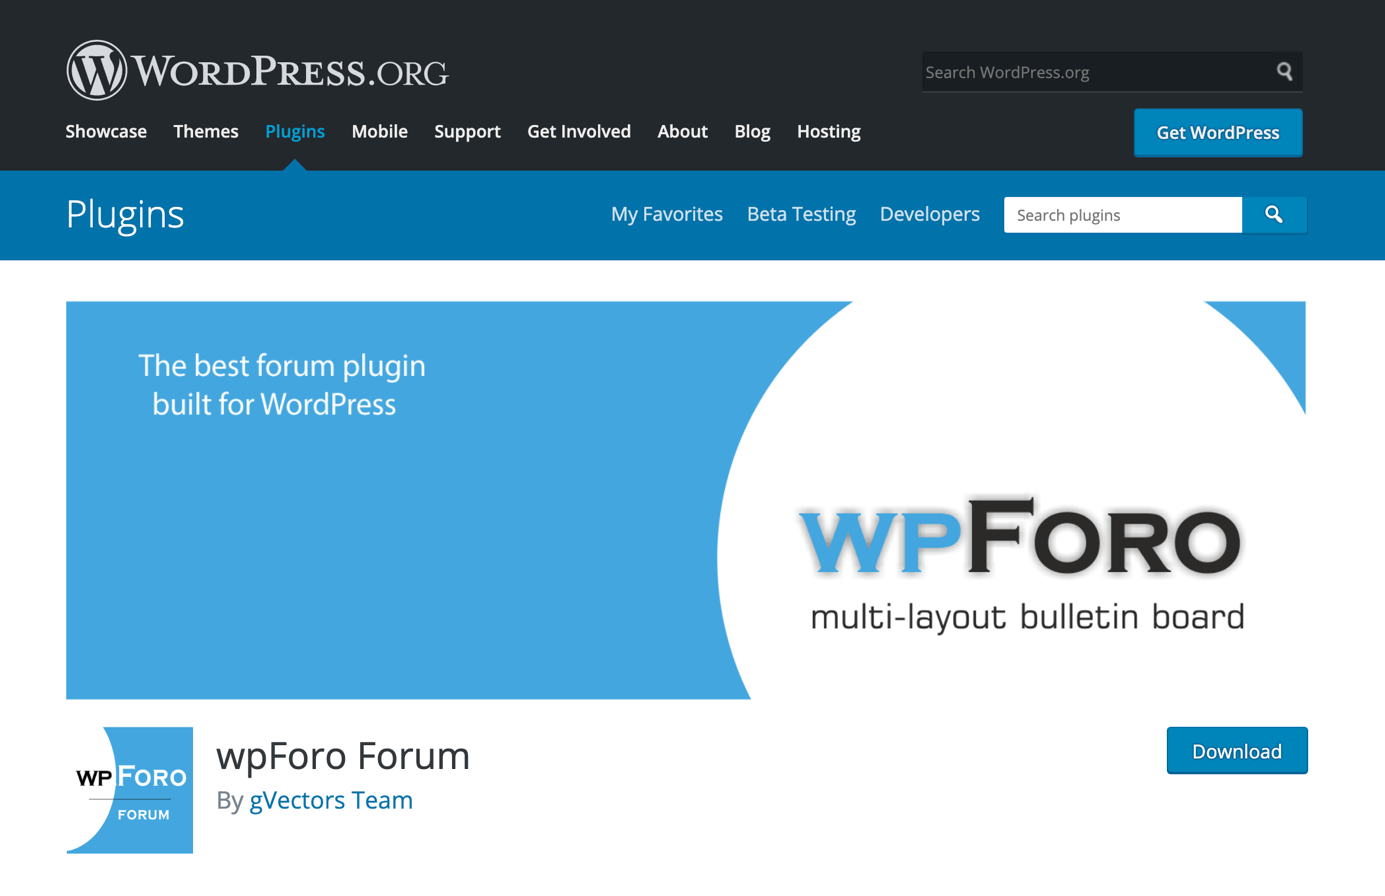 Pagina di download di wpForo Forum su WordPress.org